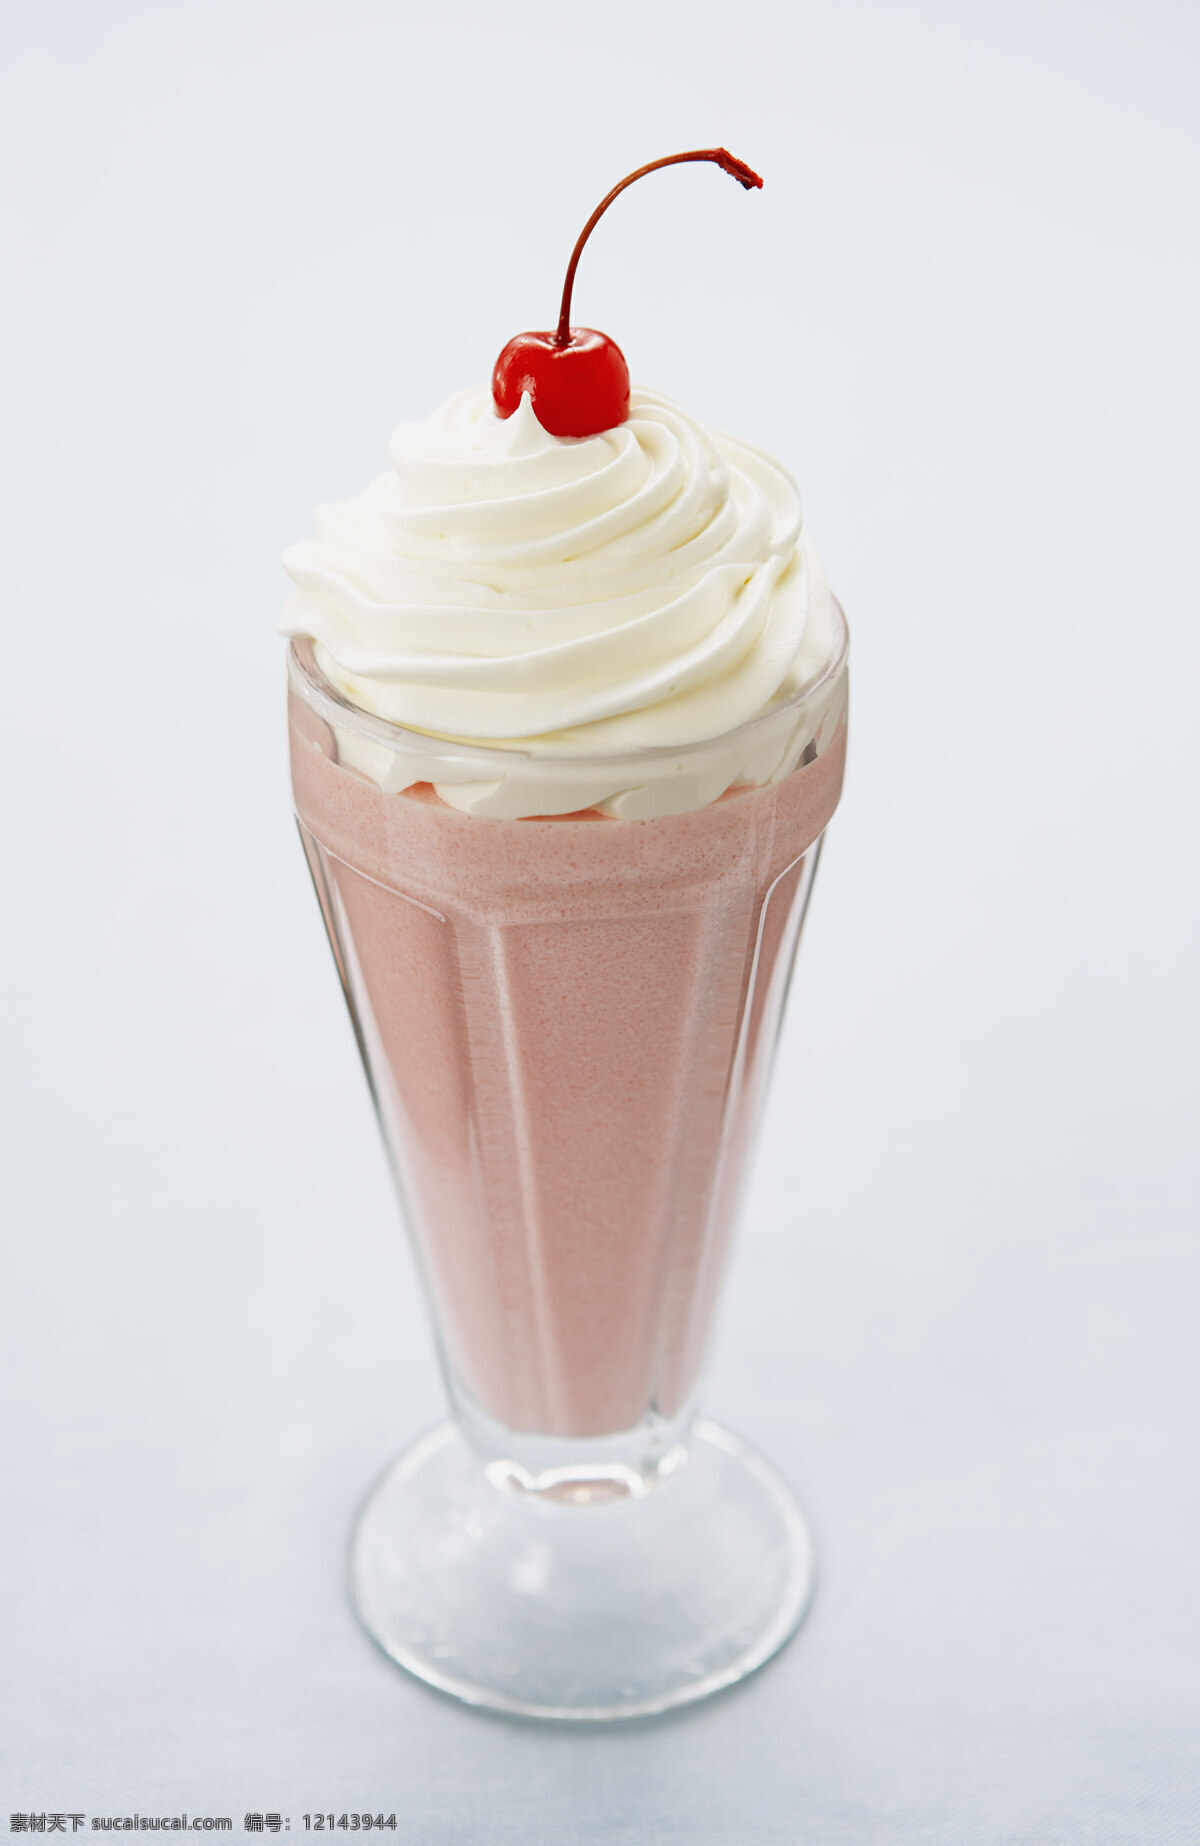 冰淇淋 甜品 饮品 饮料 背景 素材图片 类 餐饮美食